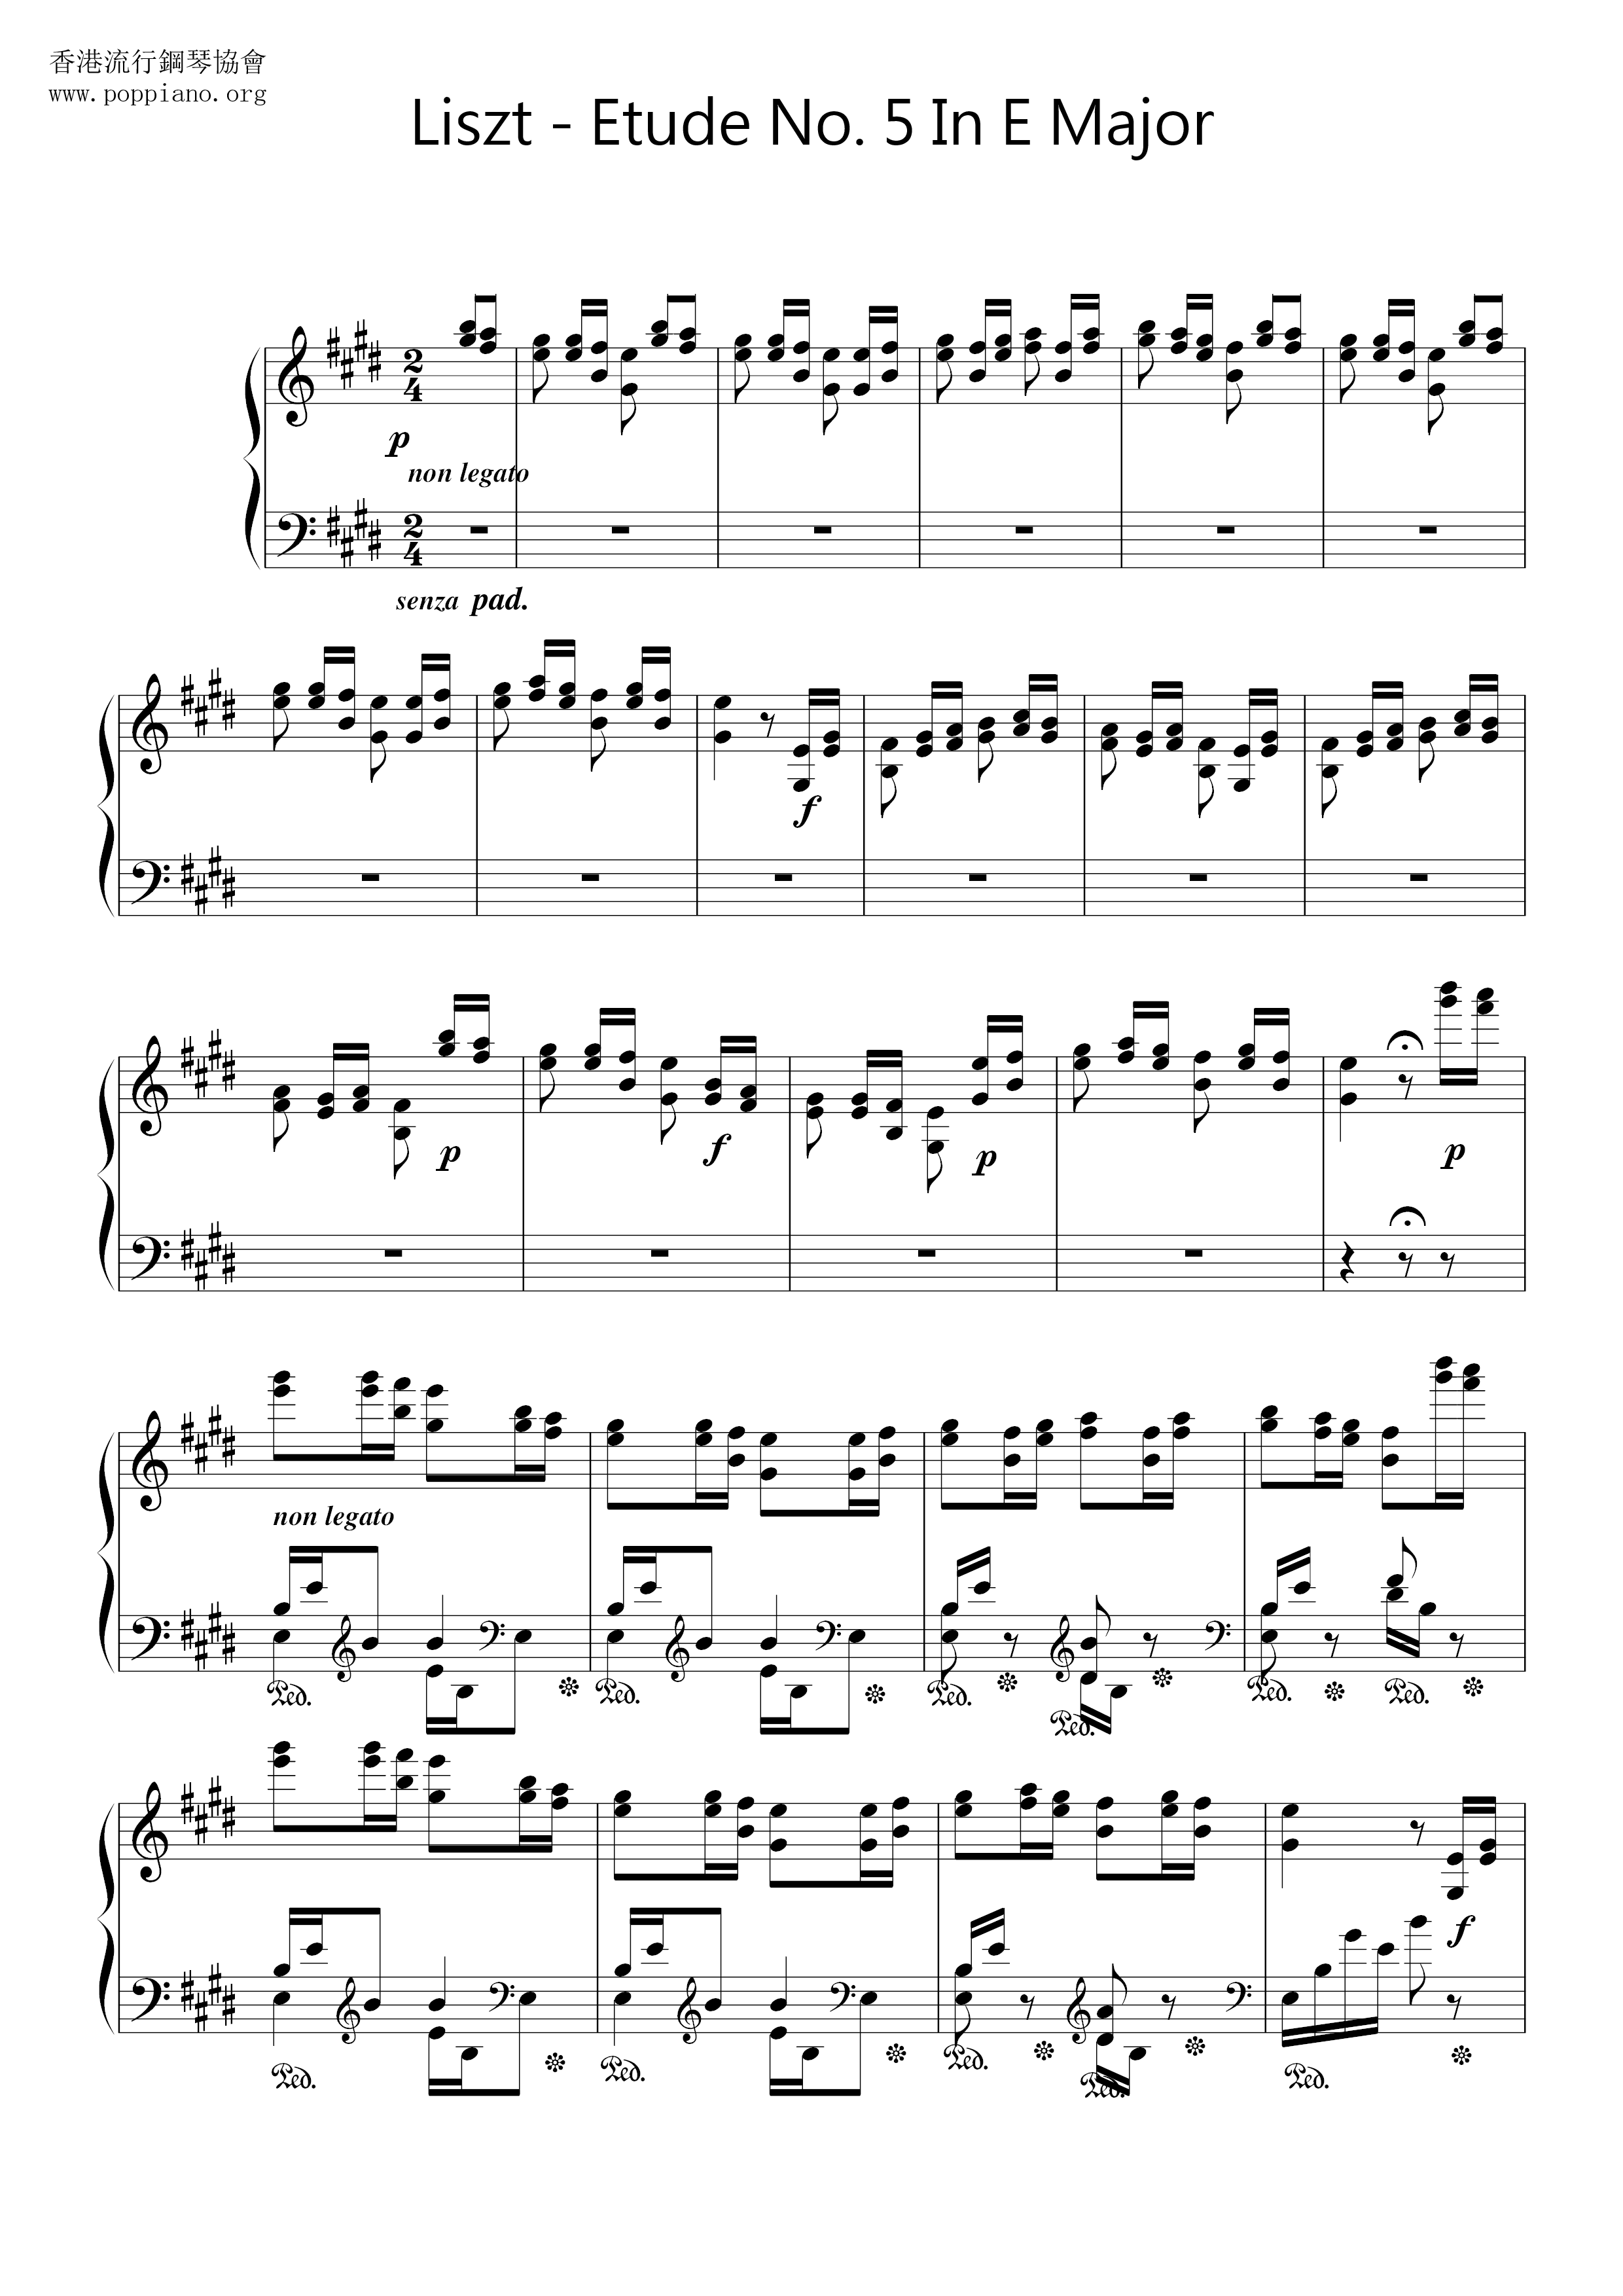 Etude No. 5 in E Major, La Chasse 狩獵ピアノ譜